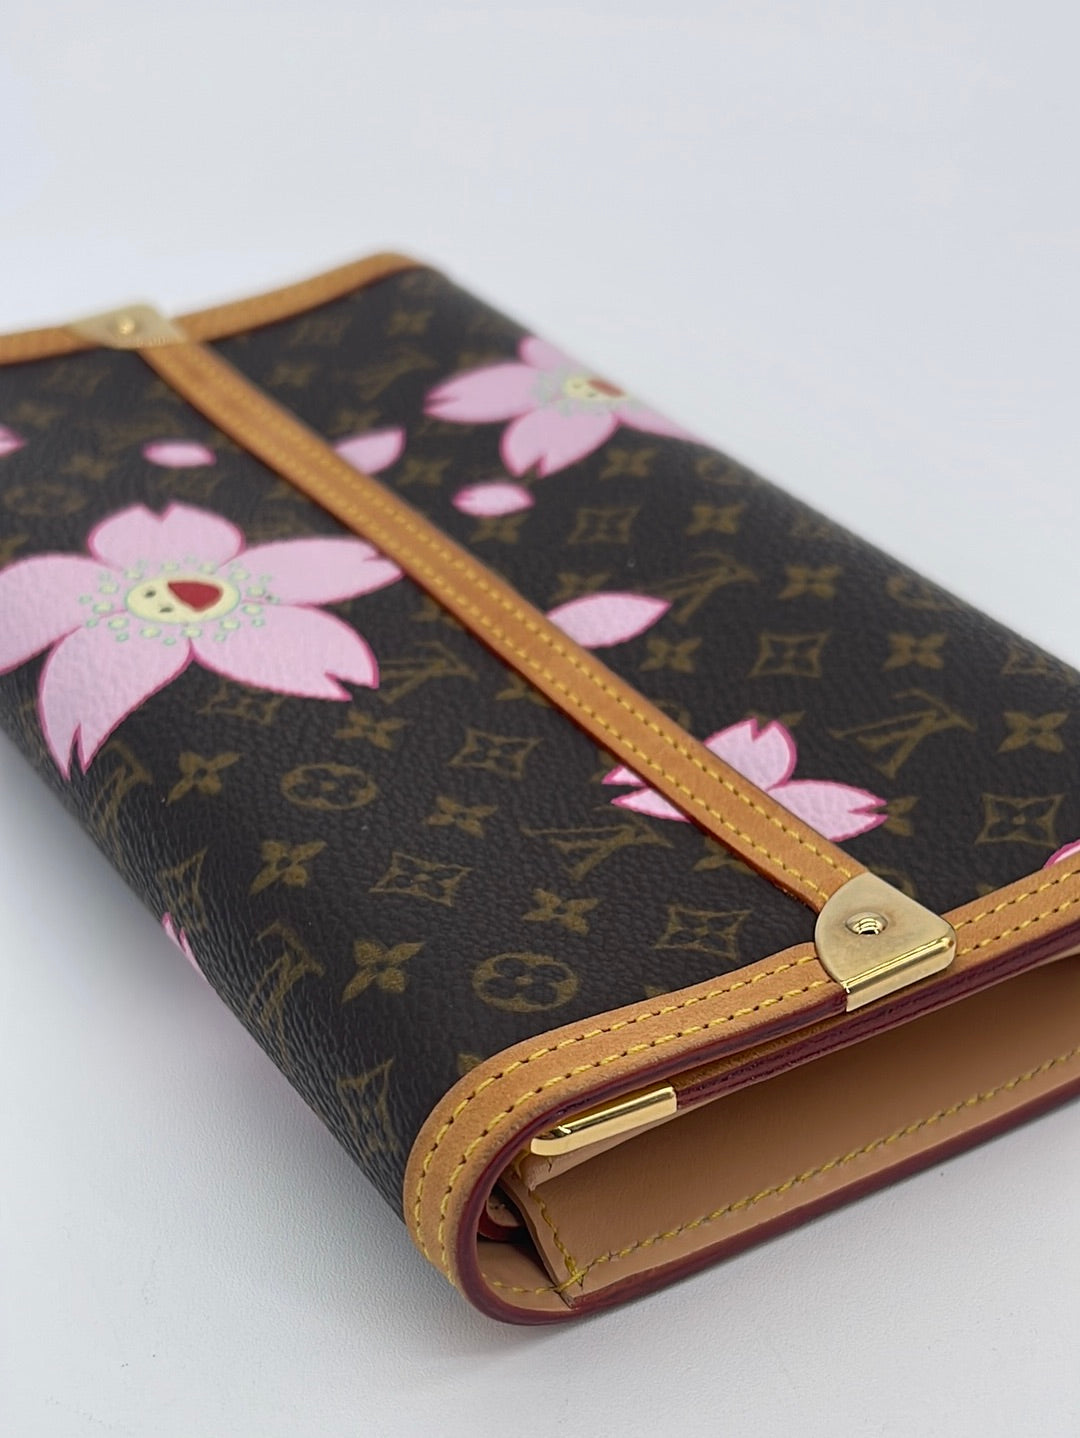 Louis Vuitton Limited Edition Cherry Blossom Monogram Canvas Porte Monnaie  Plat - Yoogi's Closet